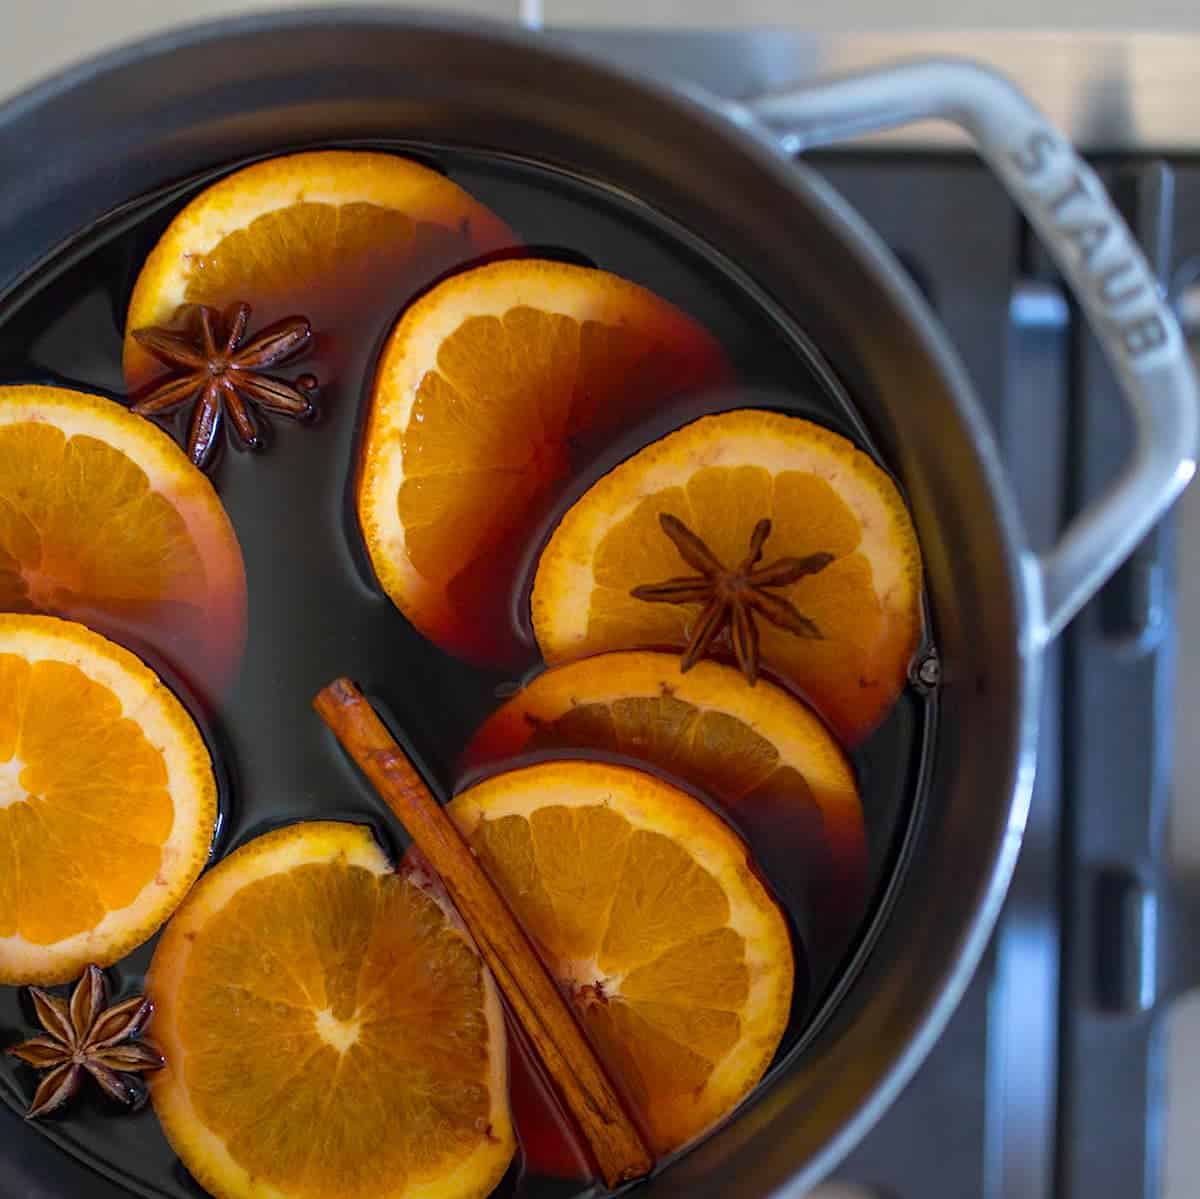 热红酒和热香料和橘子在炉子上的铸铁